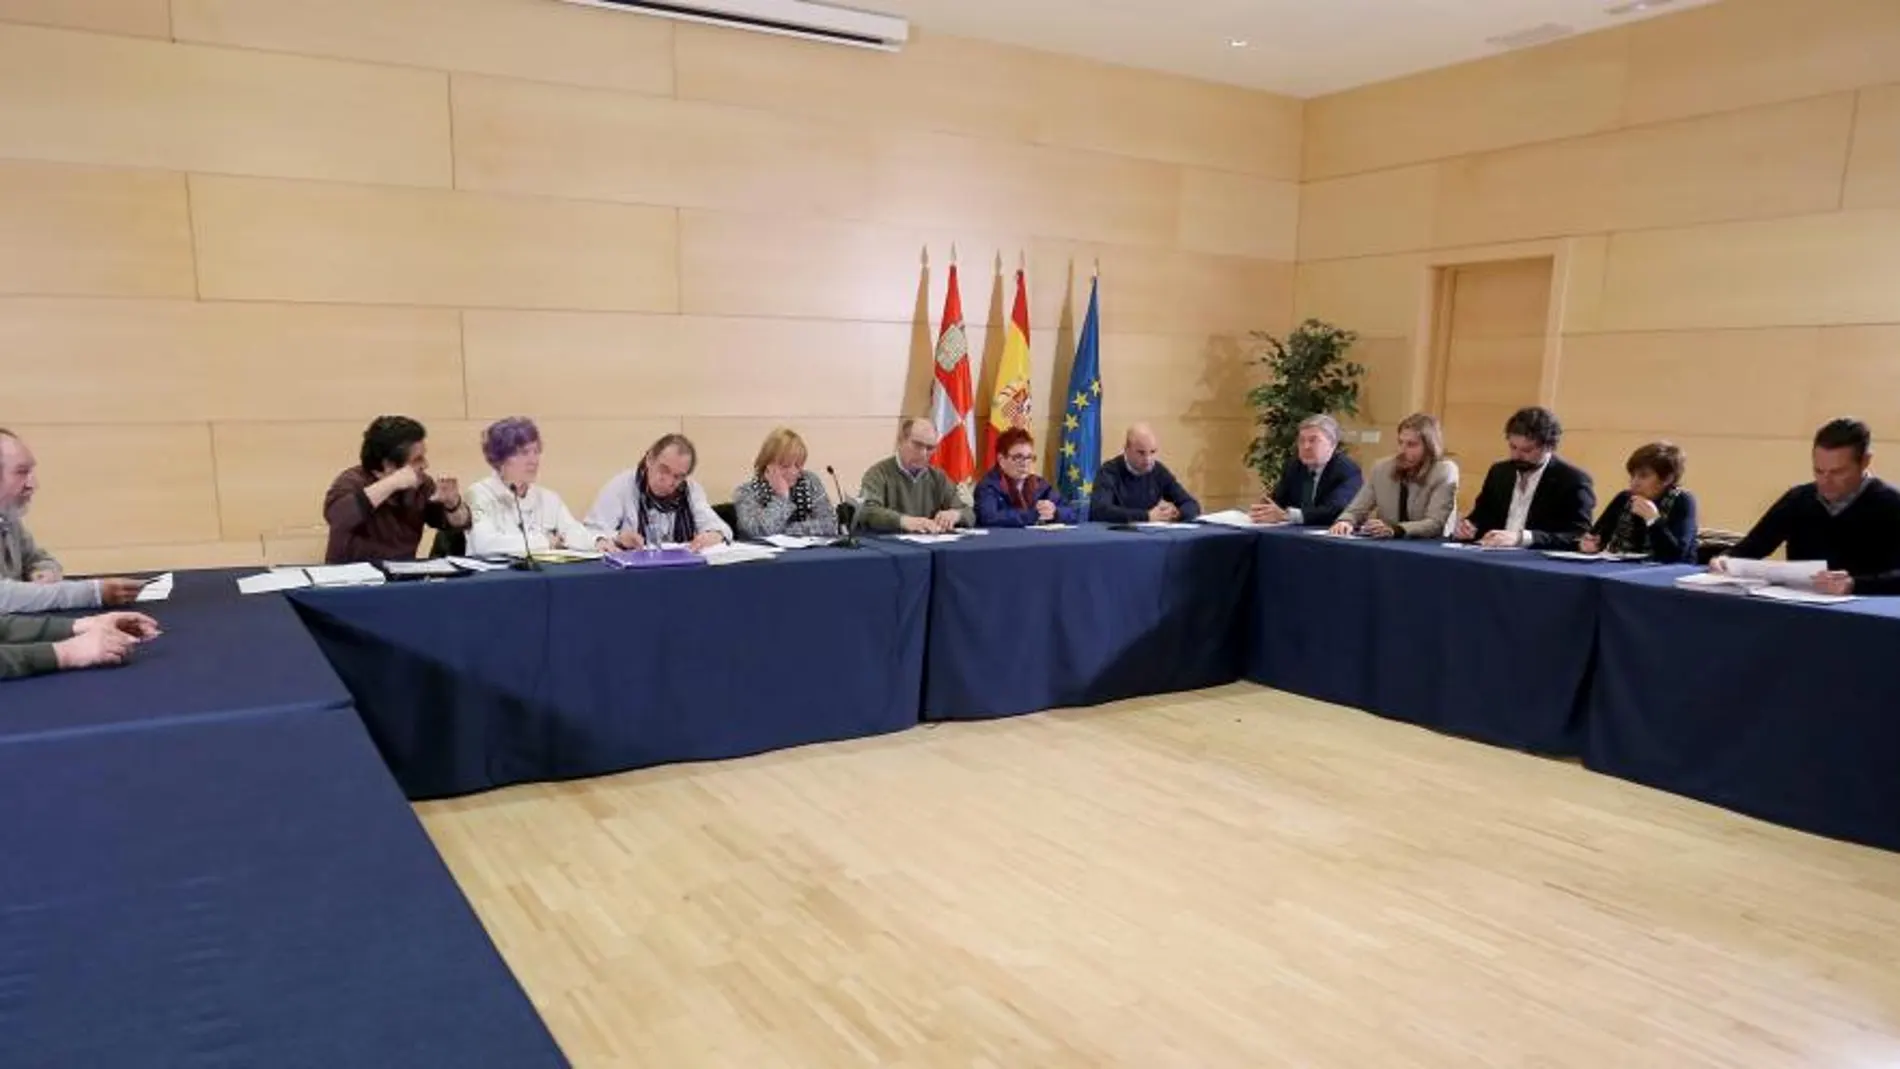 Un instante de la reunión entre los representantes de los pensionistas con procuradores de todos los partidos en las Cortes